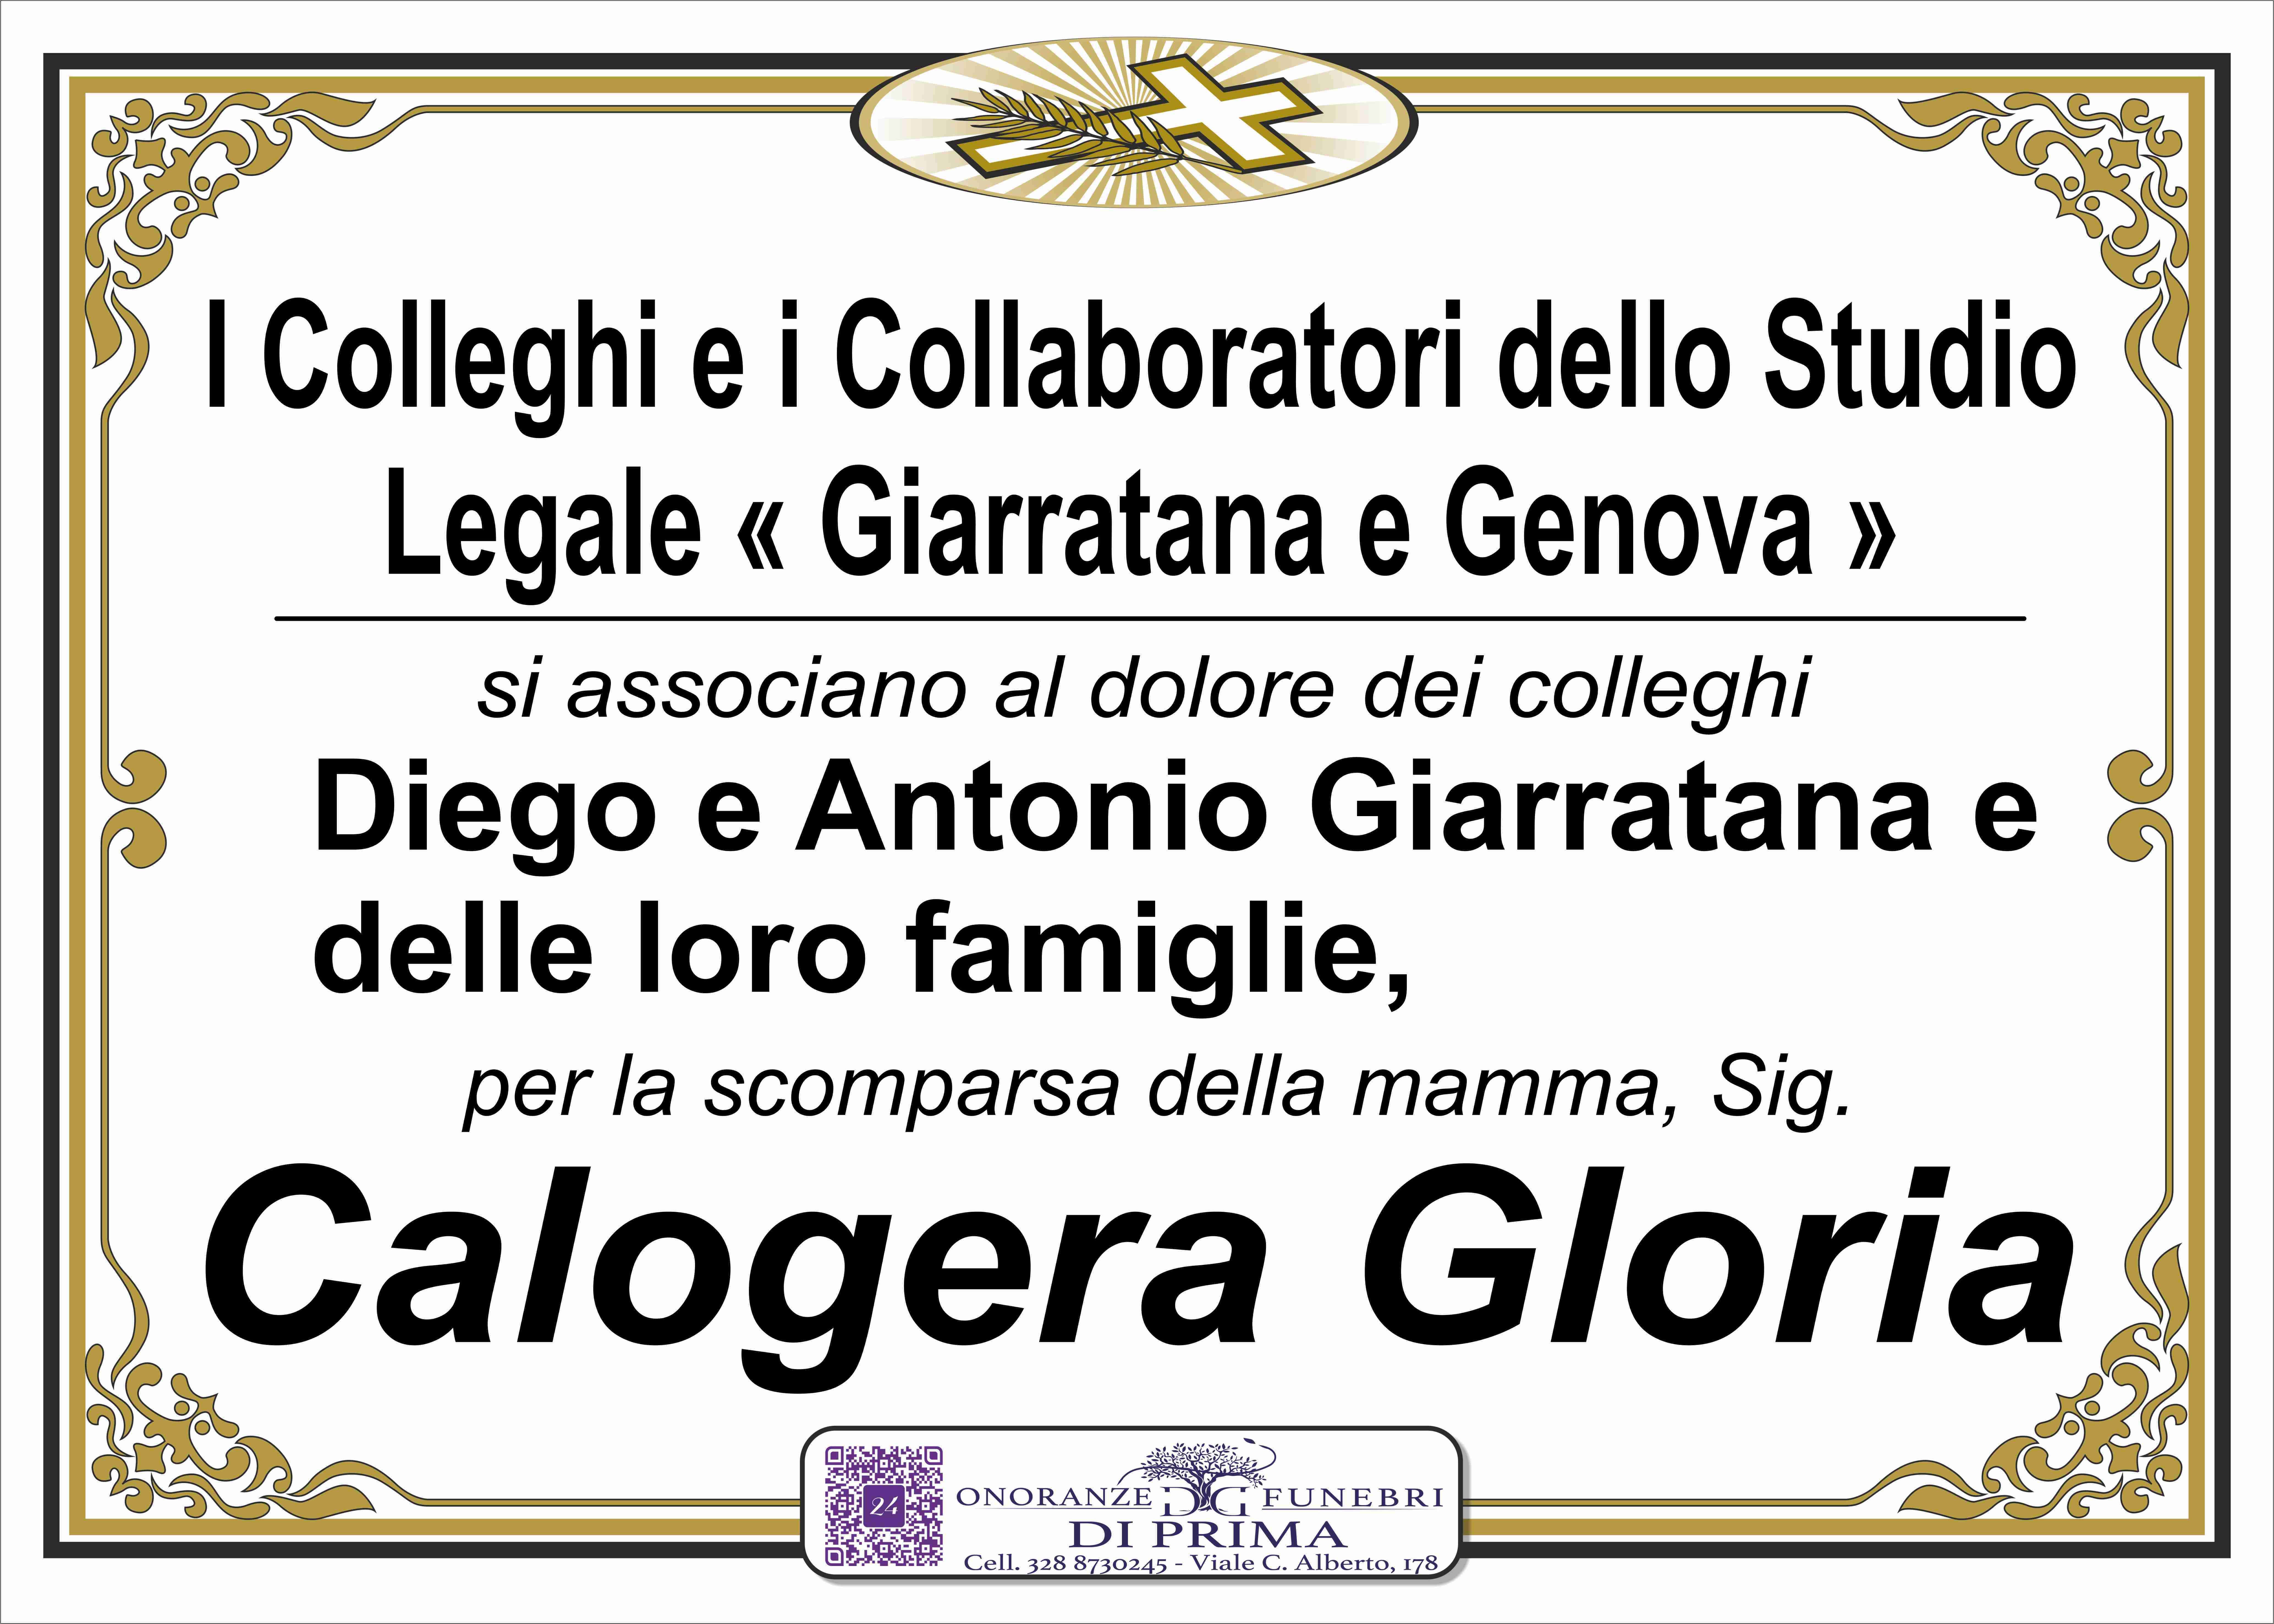 Calogera Gloria